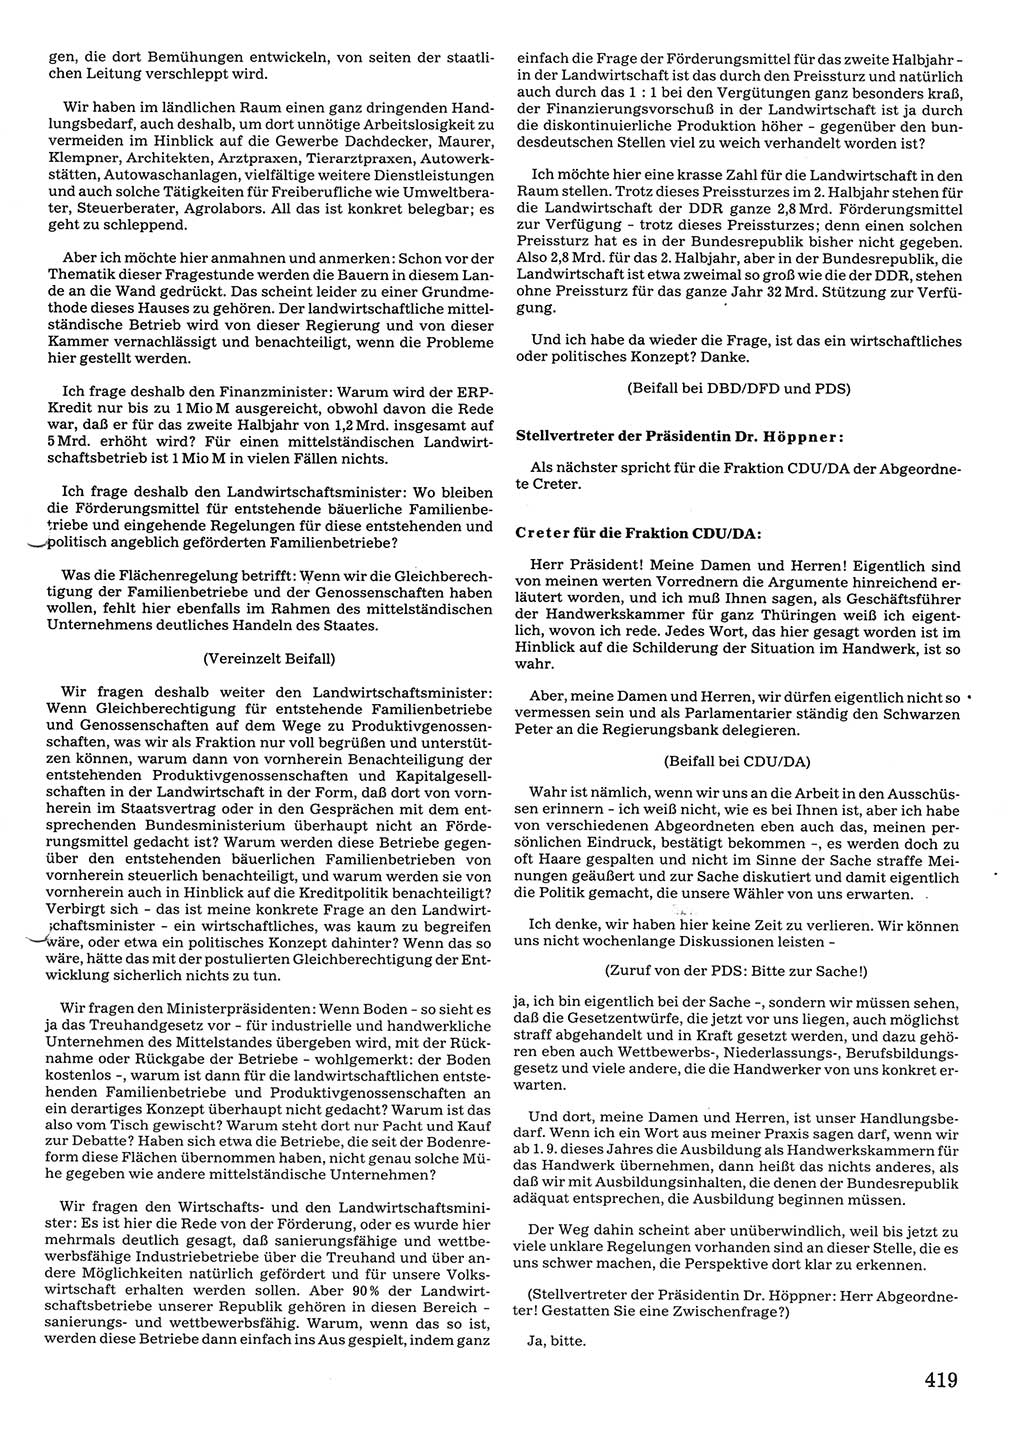 Tagungen der Volkskammer (VK) der Deutschen Demokratischen Republik (DDR), 10. Wahlperiode 1990, Seite 419 (VK. DDR 10. WP. 1990, Prot. Tg. 1-38, 5.4.-2.10.1990, S. 419)